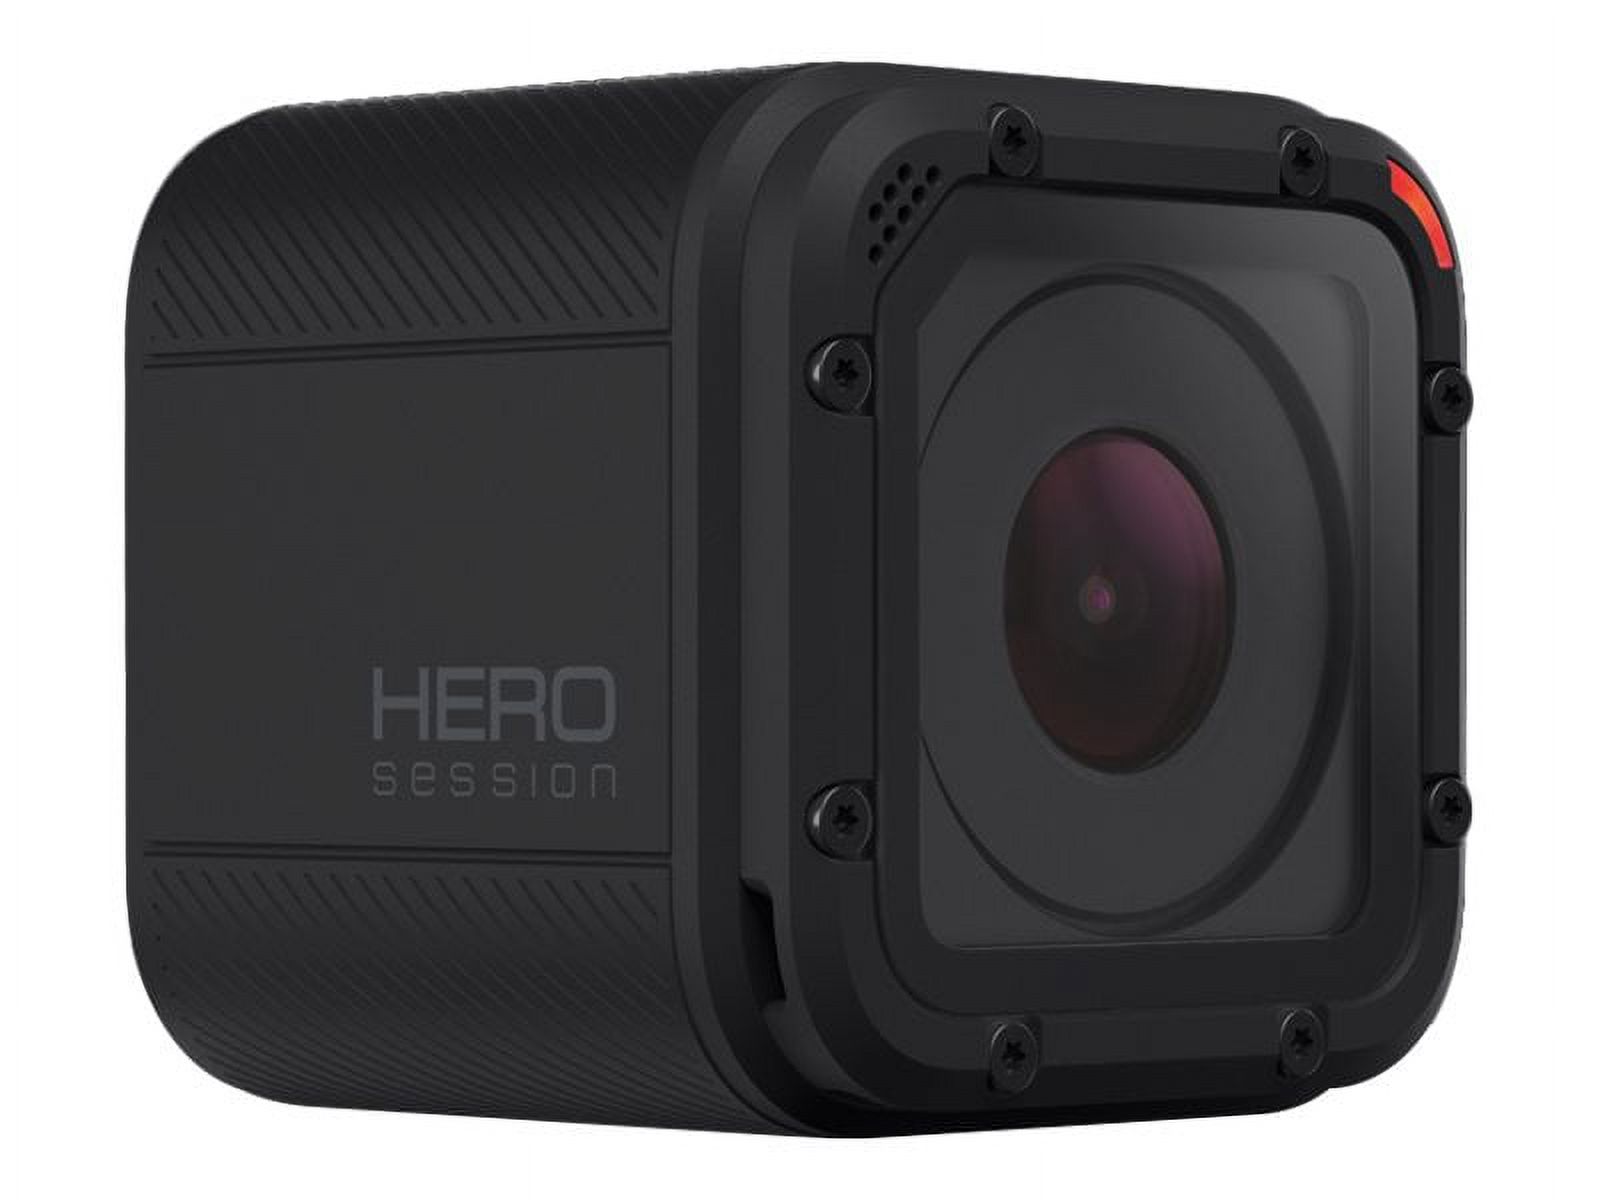 GoPro HERO Session - Bonus Bundle - action camera - 1440p / 30 fps - 8.0 MP - Wireless LAN - underwater up to 30ft - image 2 of 6